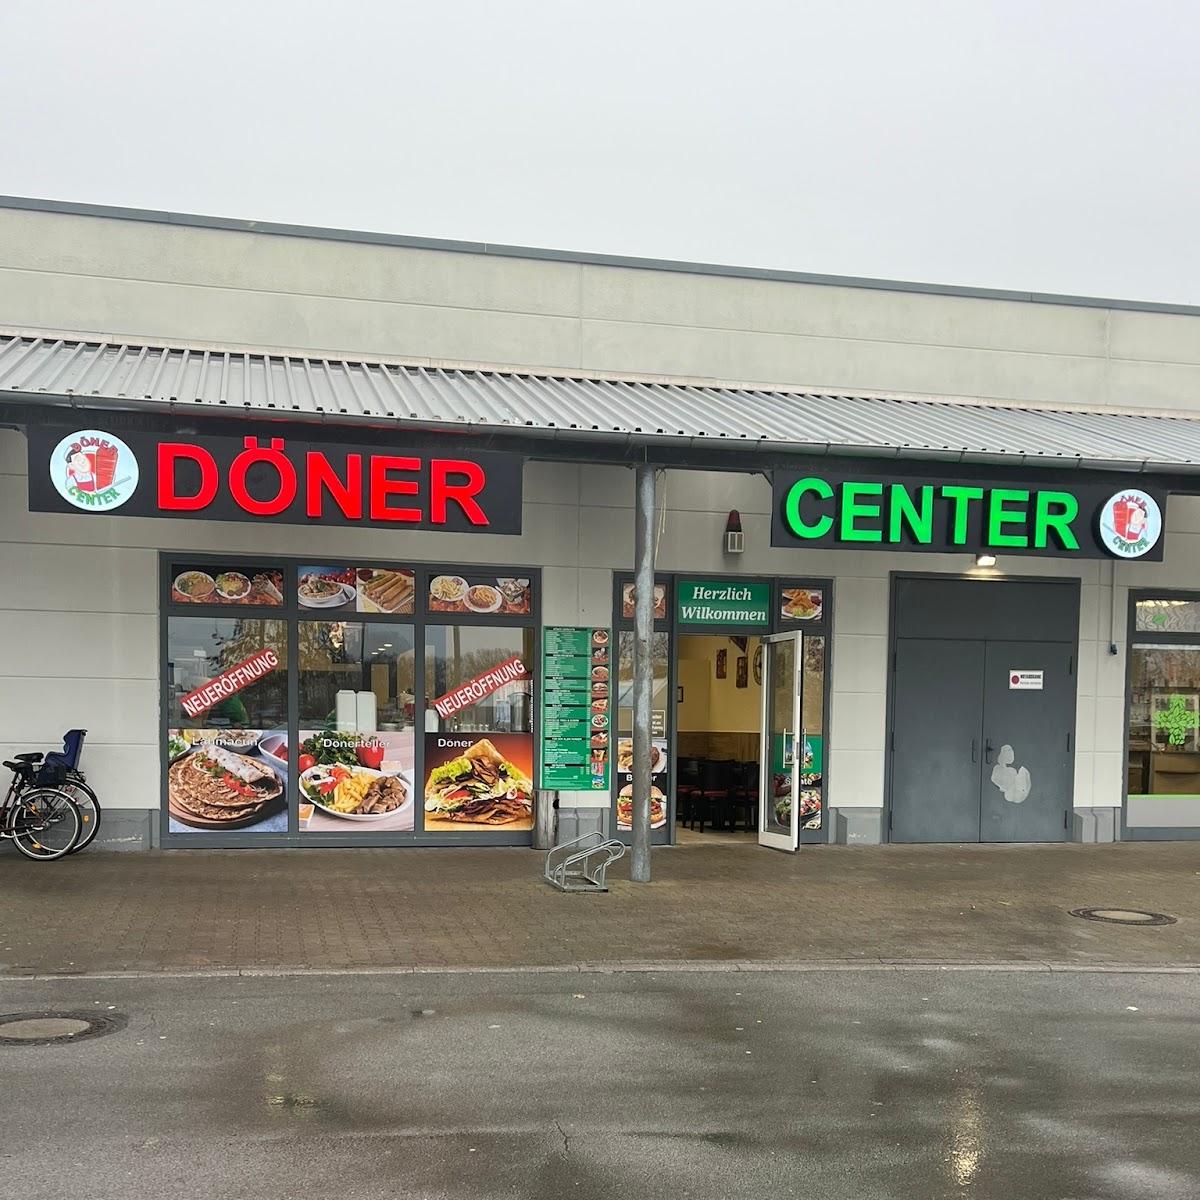 Restaurant "Döner Center" in Gardelegen